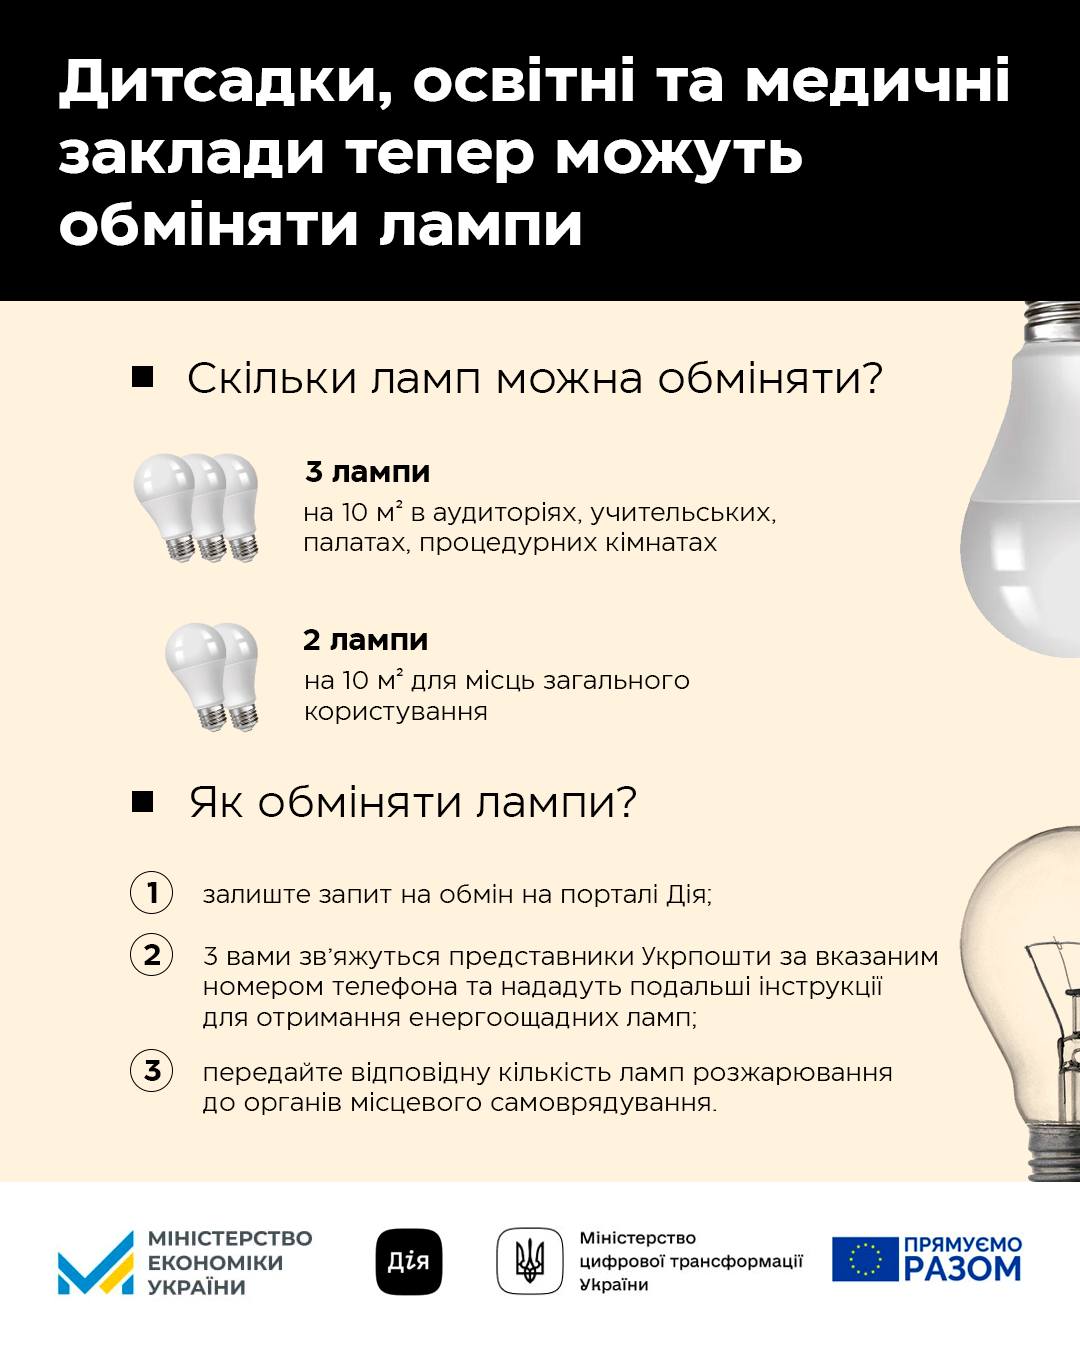 Освітні заклади та лікарні Житомирщини можуть обміняти старі лампи на LED через портал Дія